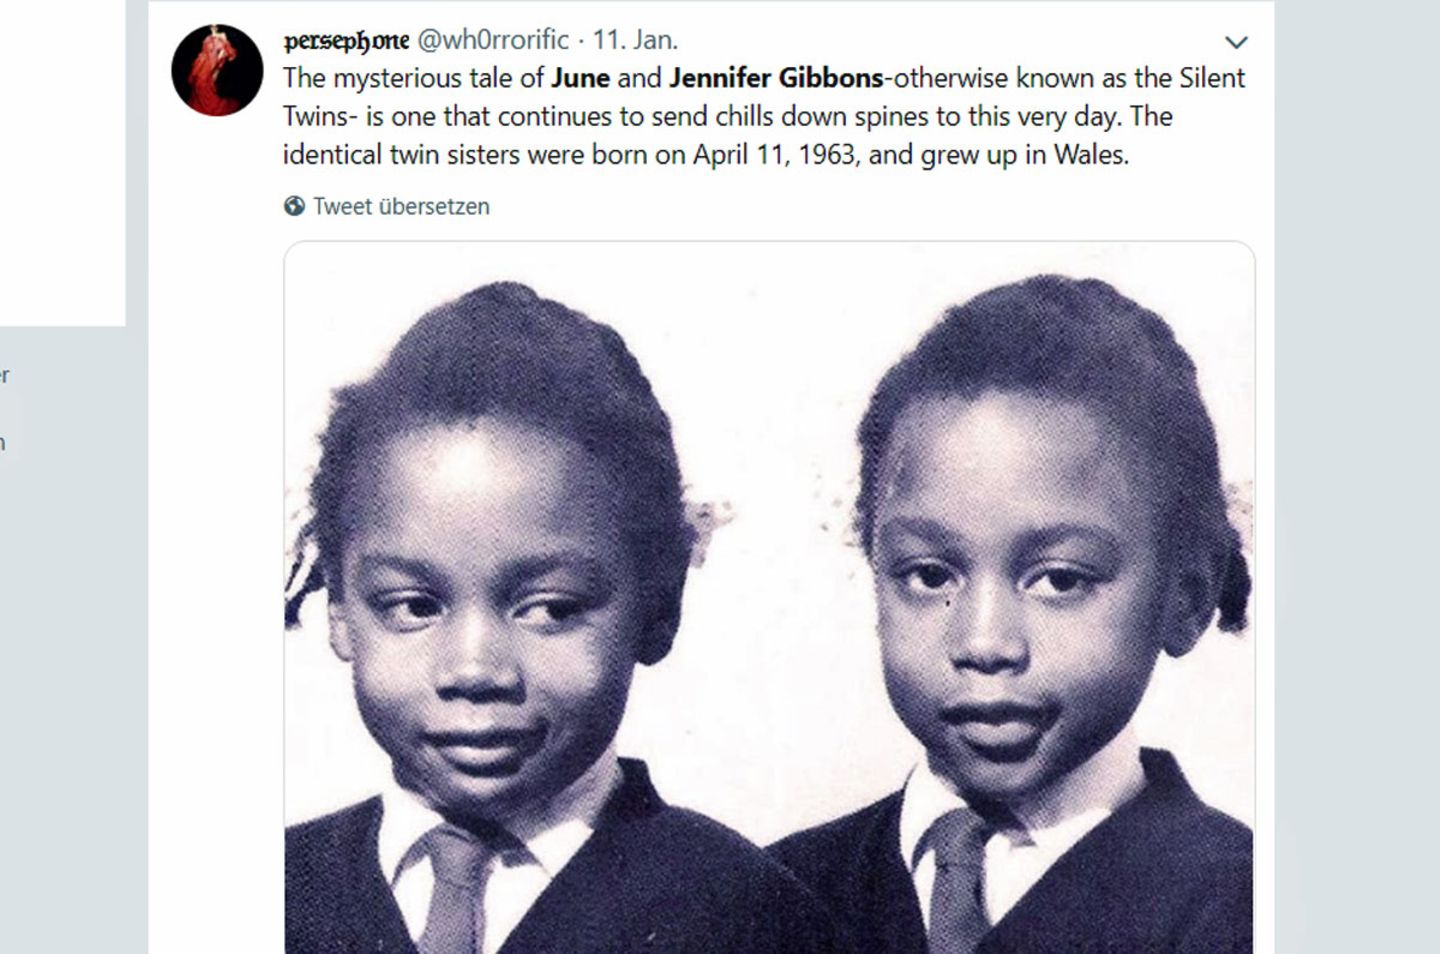 Jennifer und June Gibbons: Als Kinder bewegten sich die Zwillinge synchron und wirkten wie Zombis.